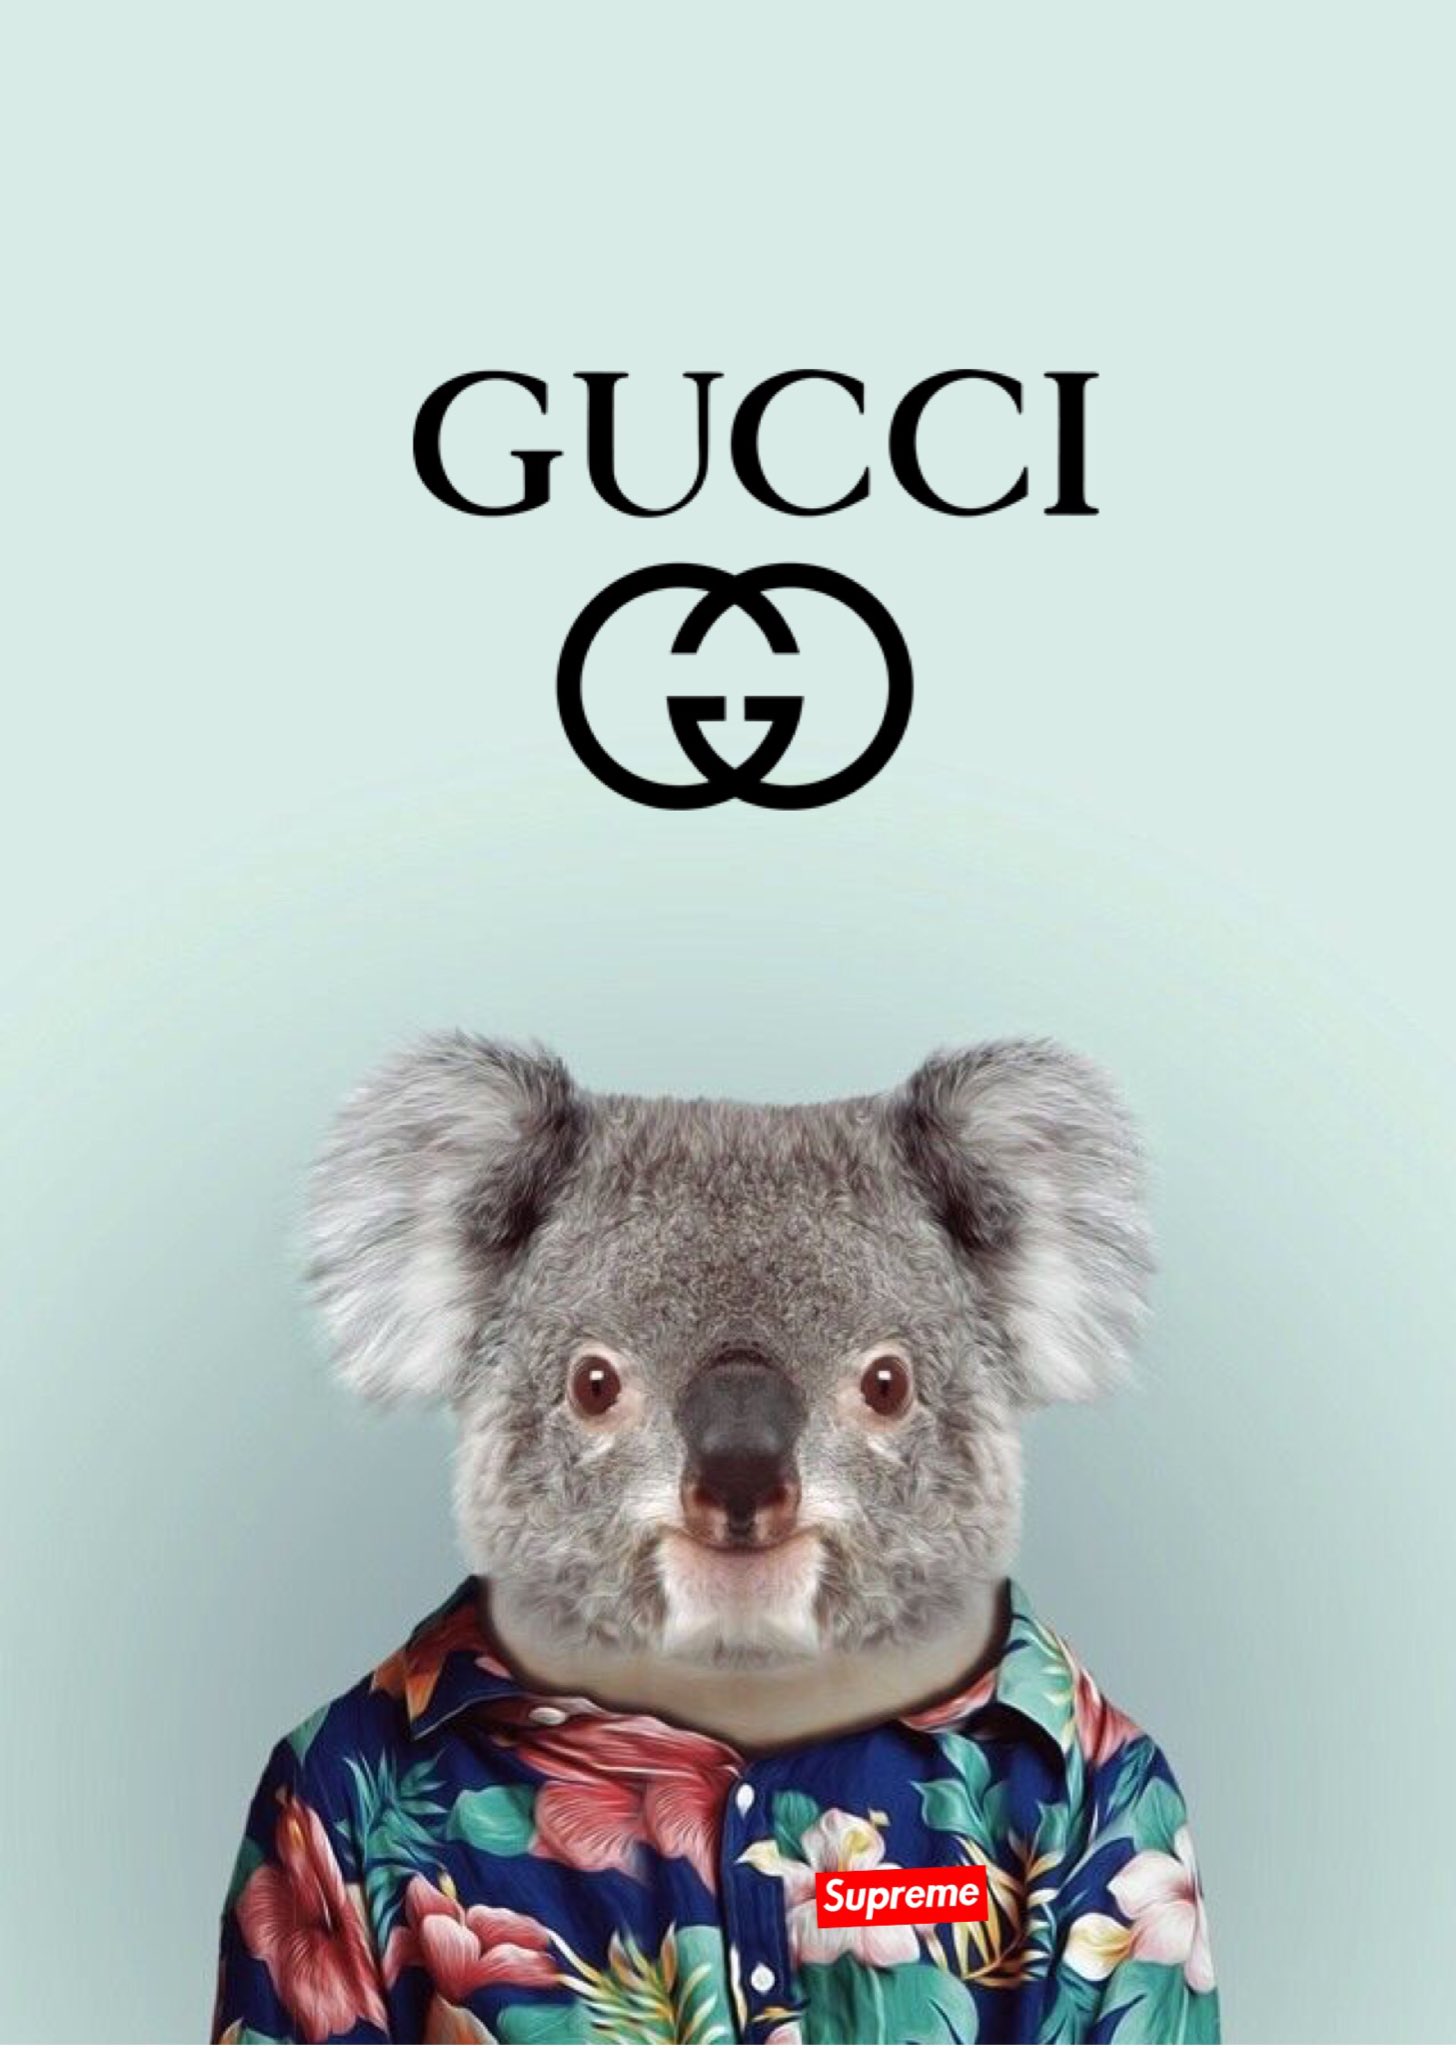 iphone wallpaper on X: Gucci x supreme wallpaper #gucci #supreme